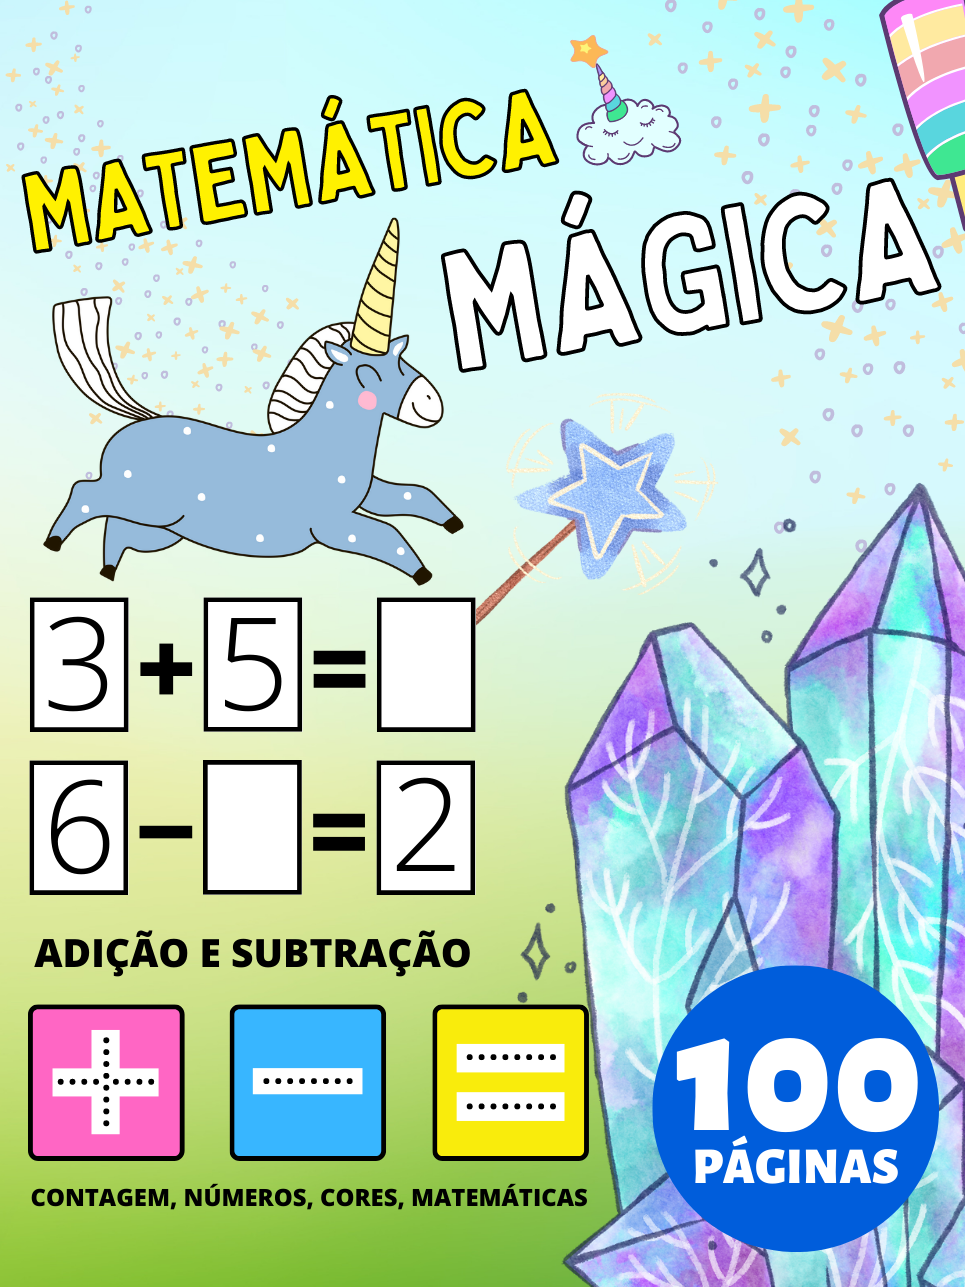 Livro de Atividades de Matemática Mágica para Pré-Escolar para Crianças 2-4-8 Anos, Adição e Subtração, Mais e Menos